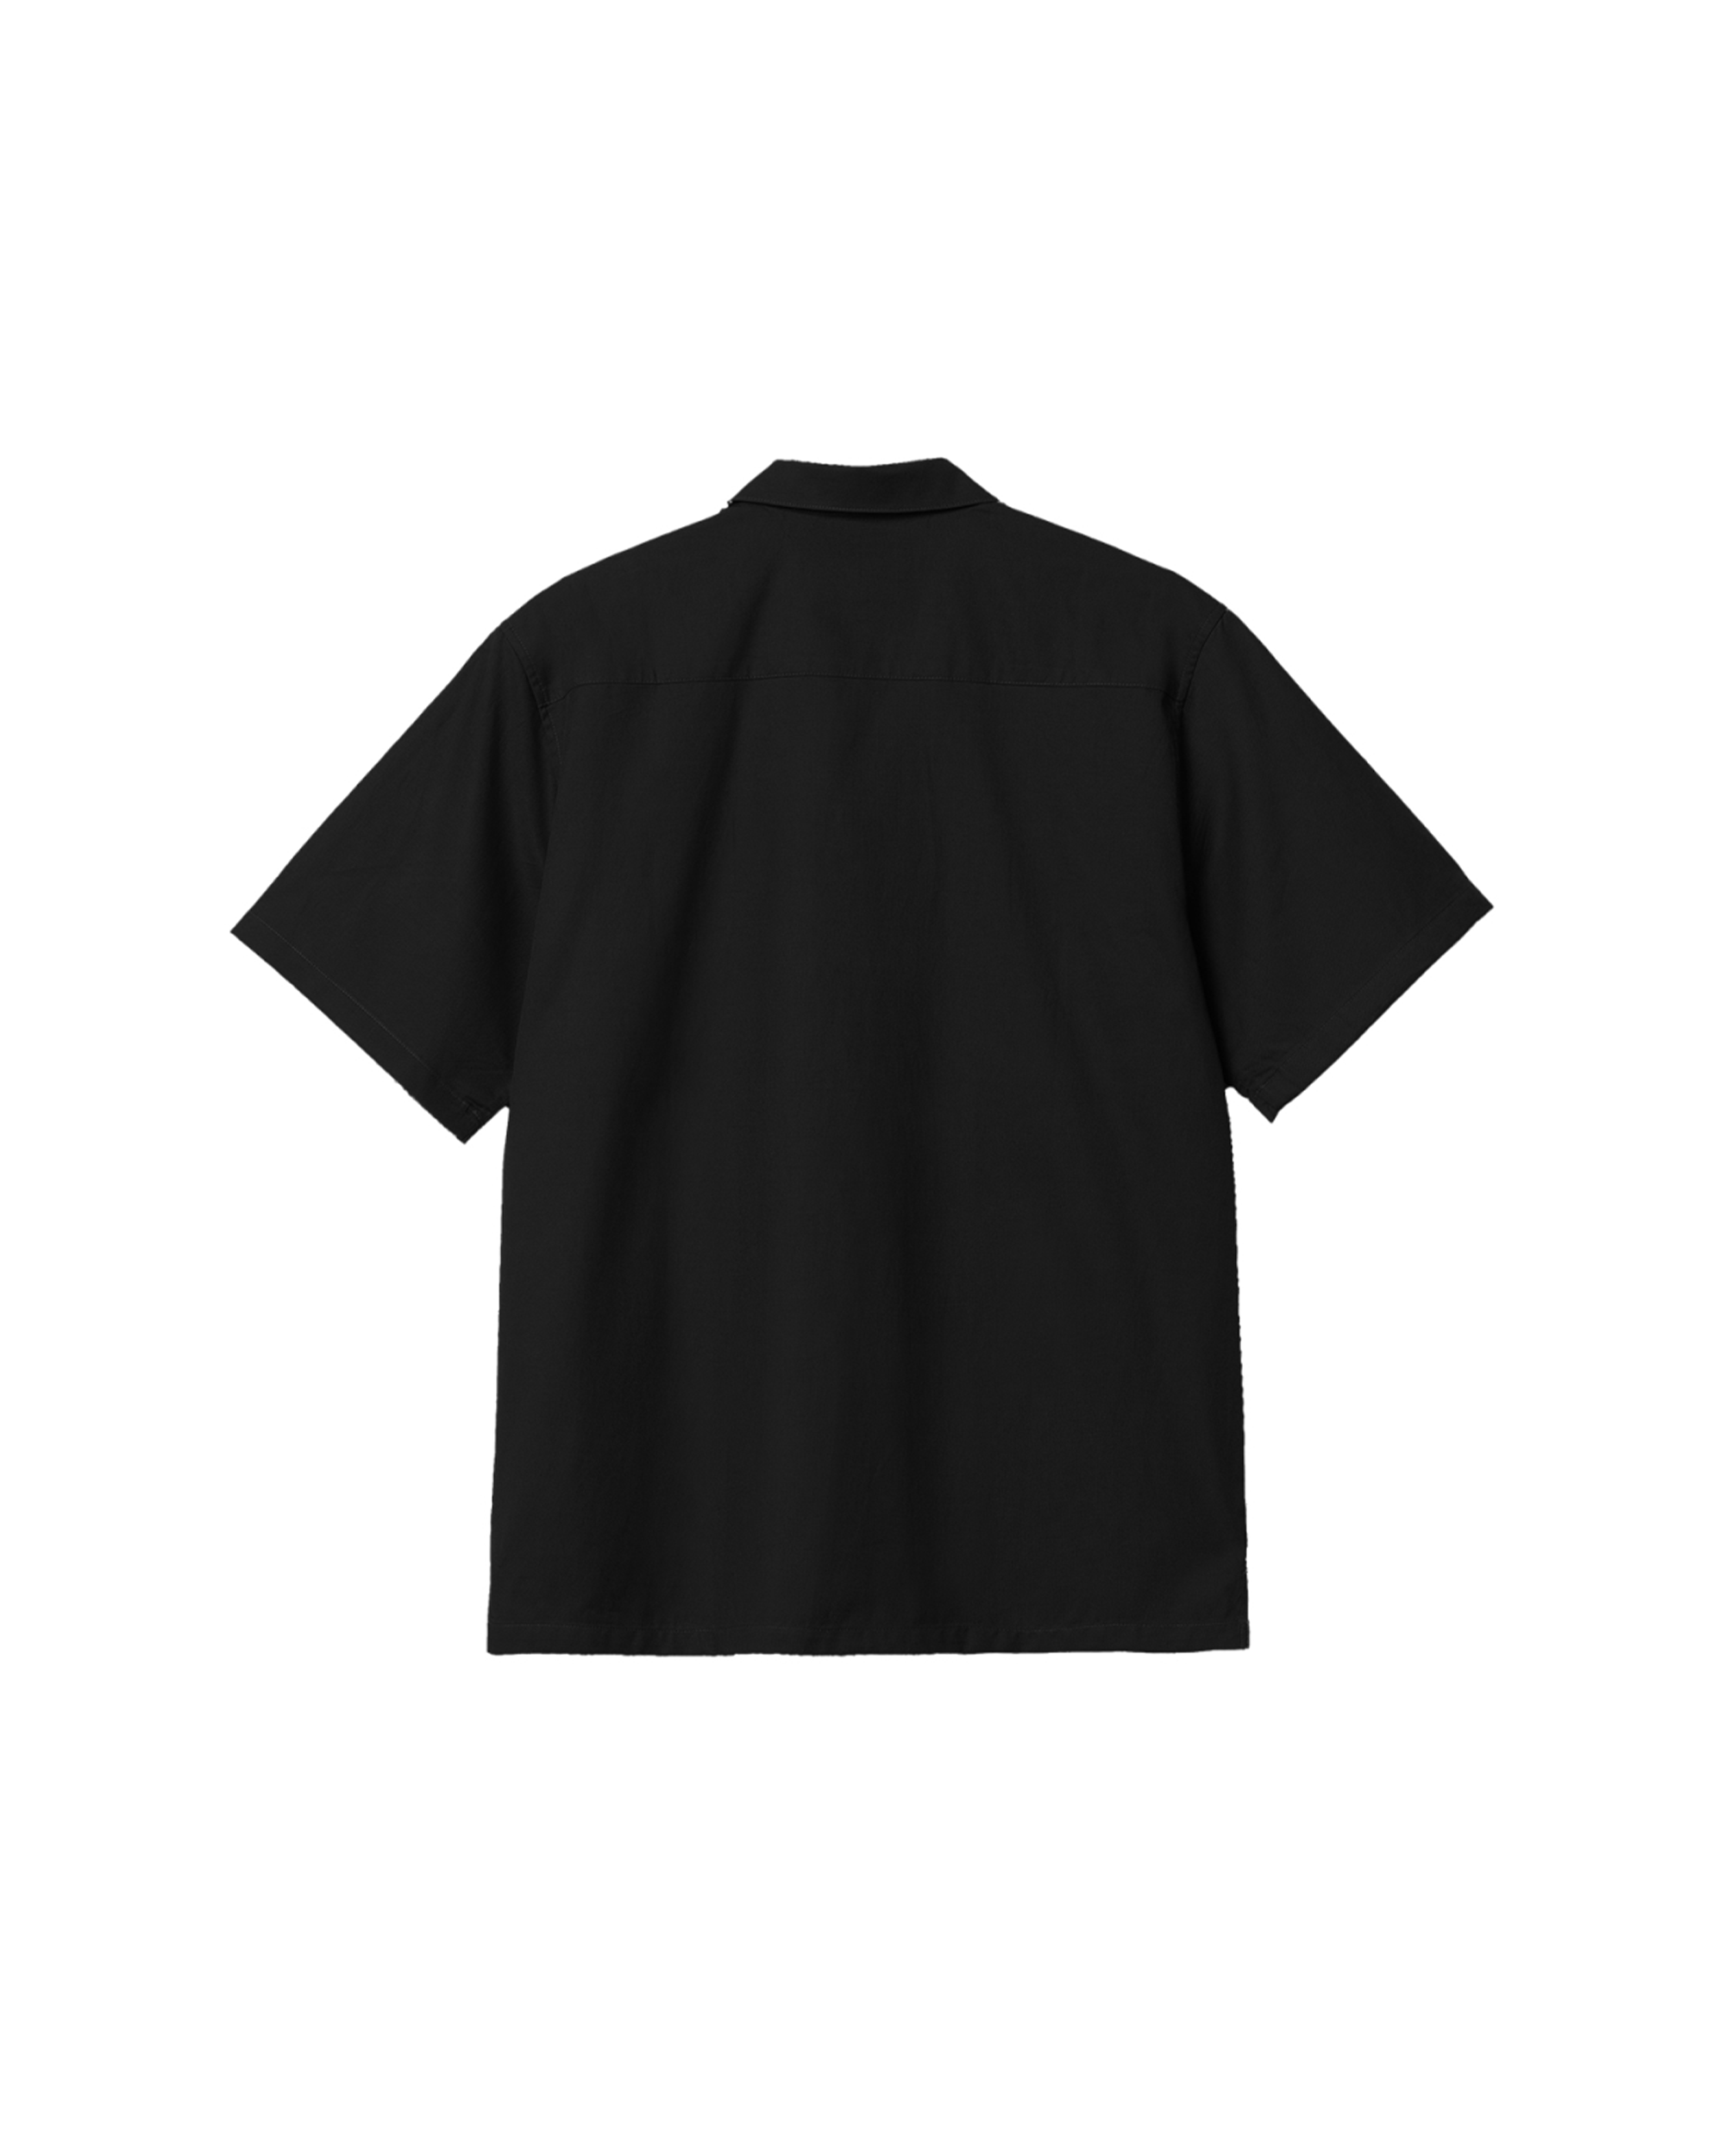 S/S Delray Shirt - Black / Wax